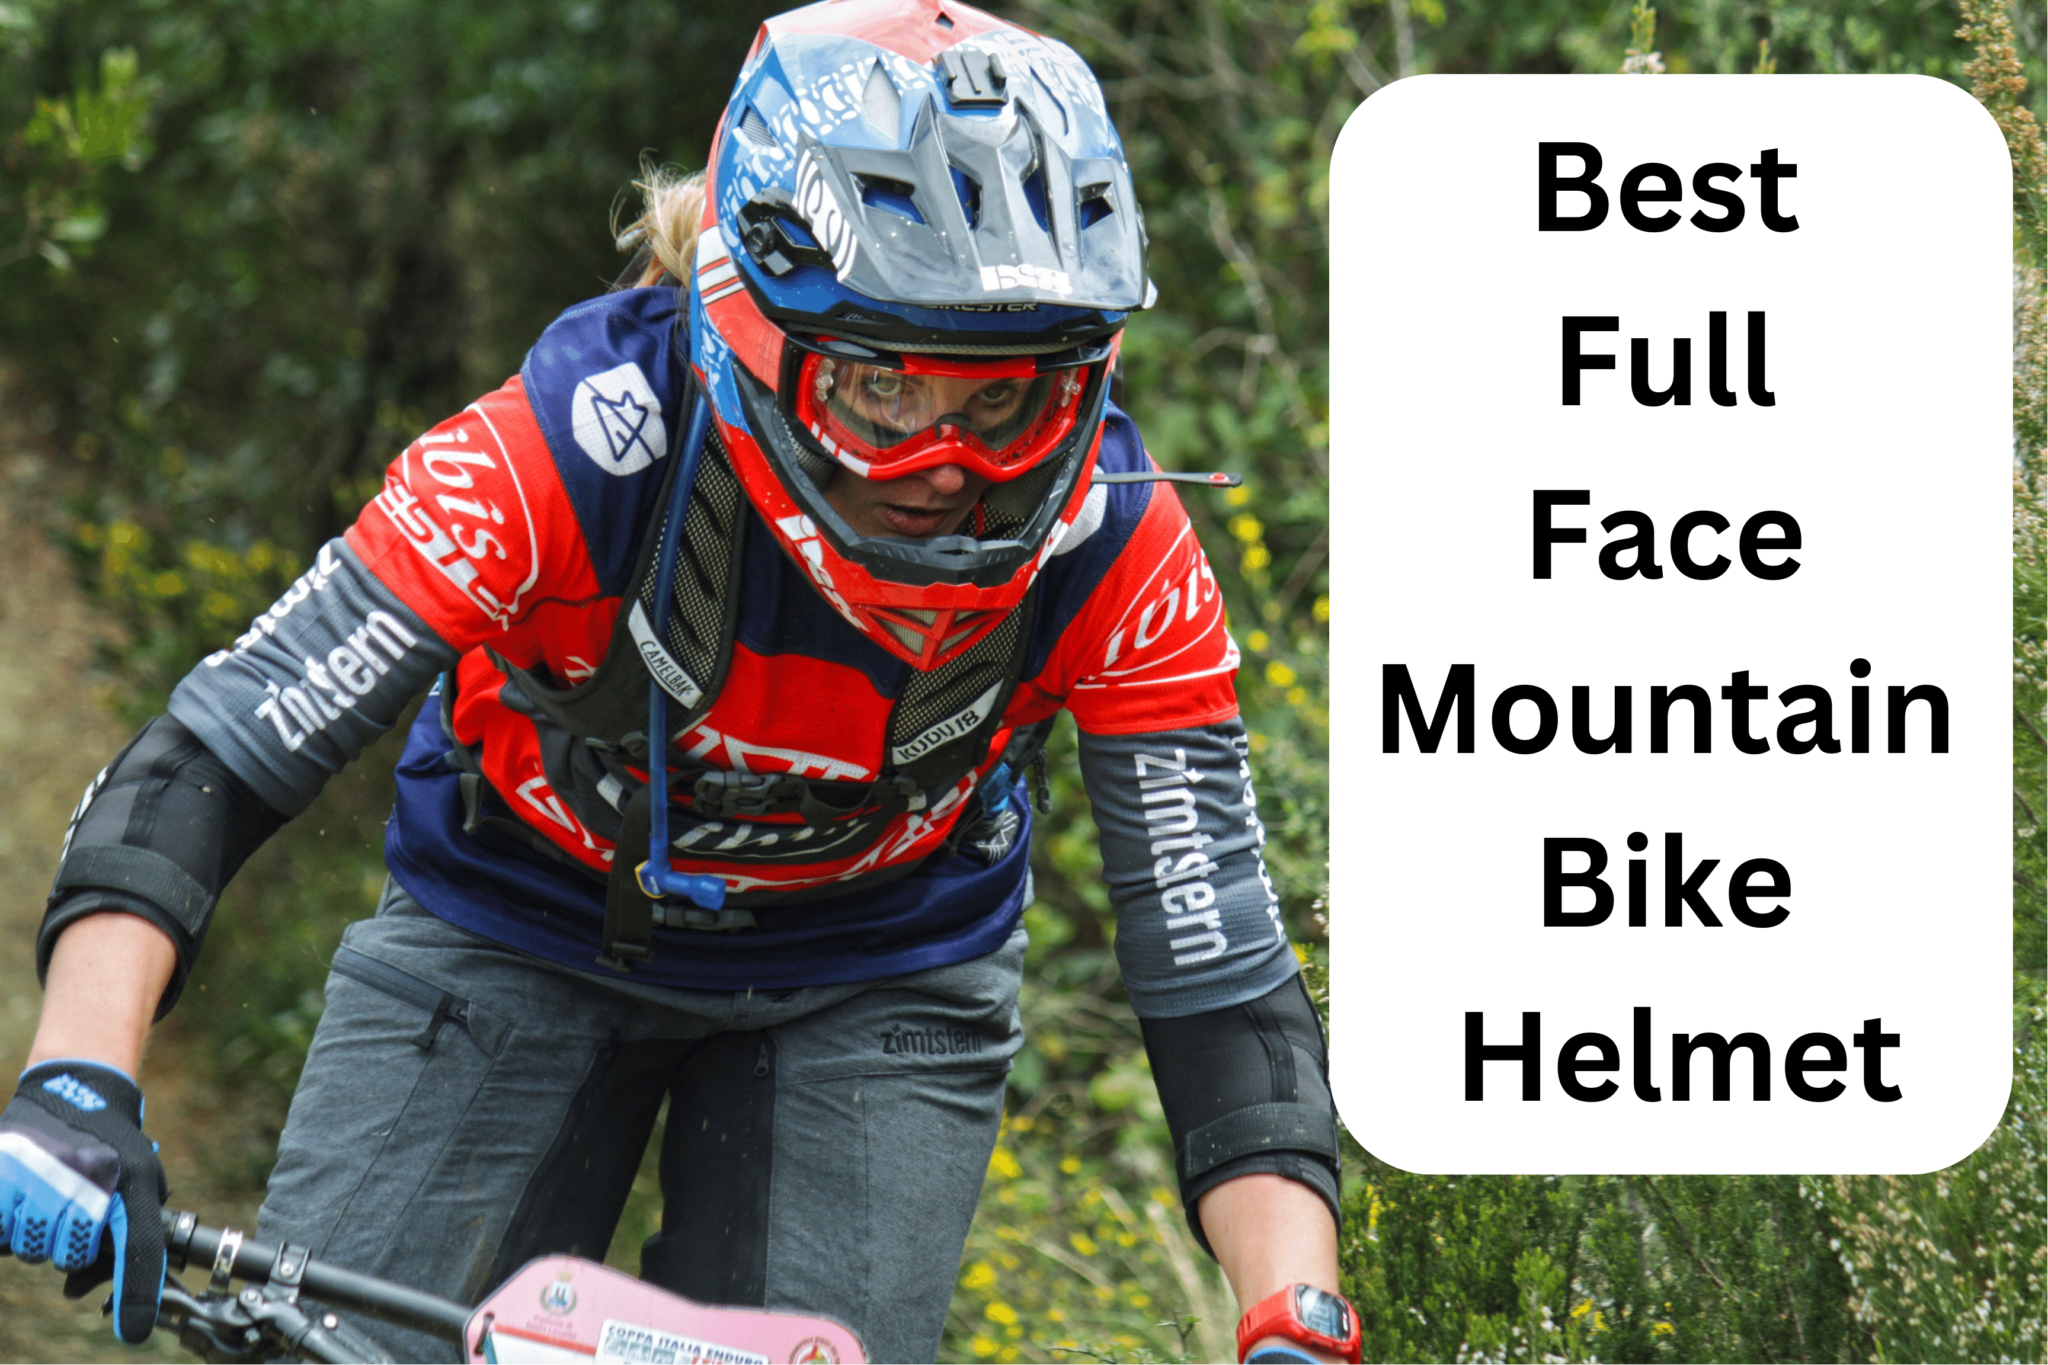 Best Full Face Mountain Bike Helmet